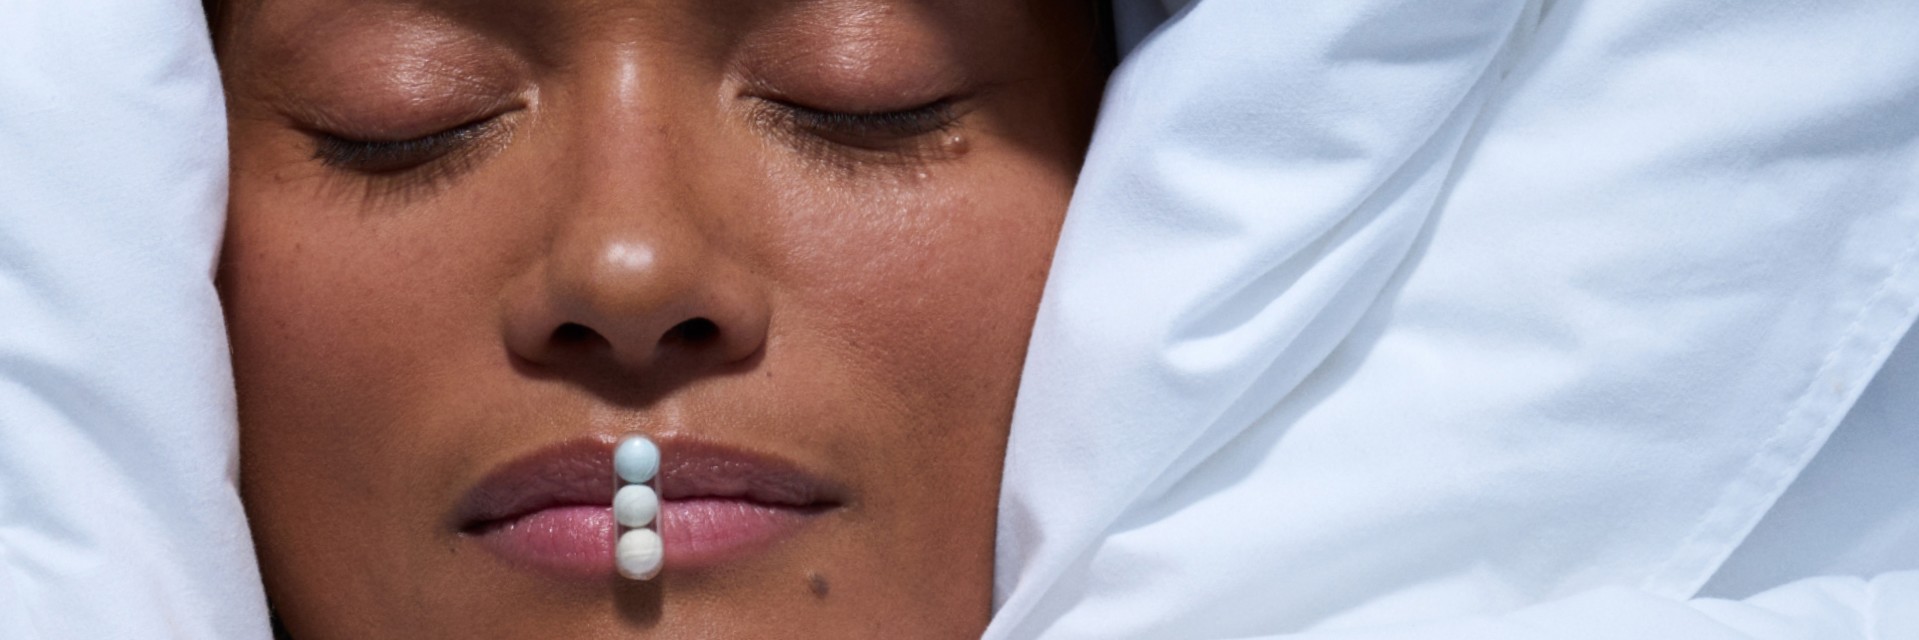 Woman sleeping with Ritual's Melatonin capsule on her lips.